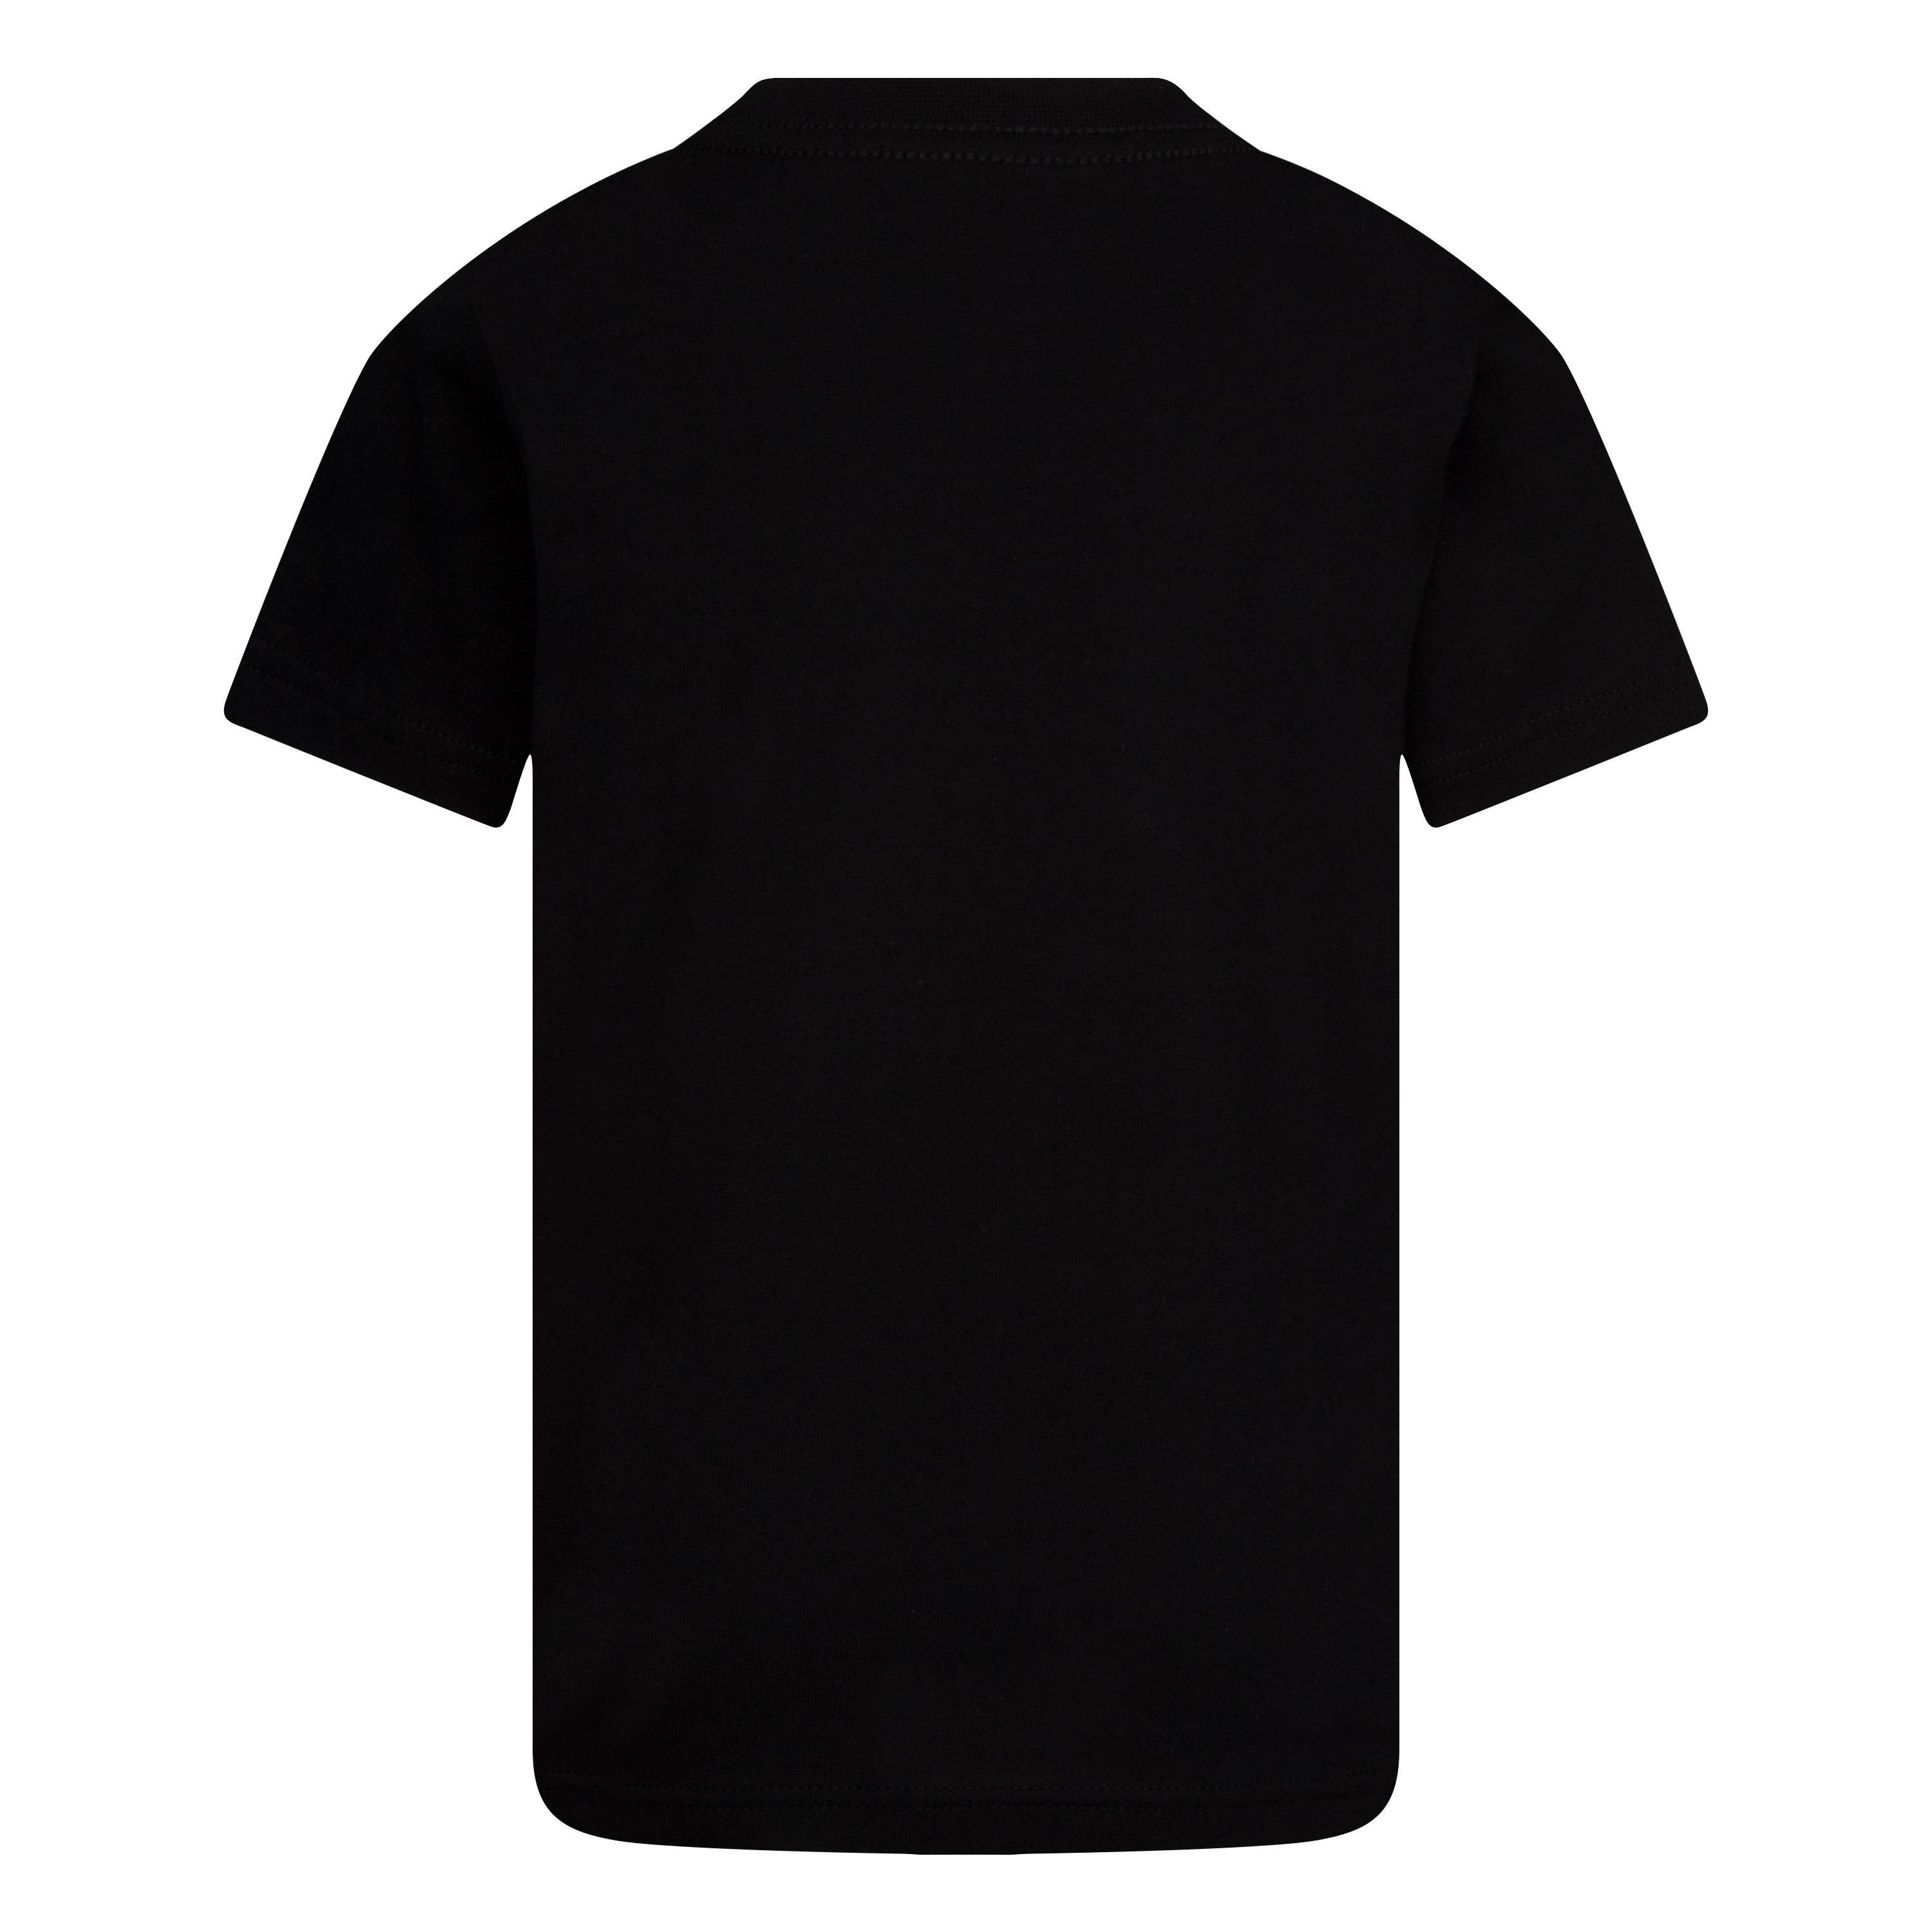 Nike Sportswear T-Shirt TEE Kinder black für SWOOSH NKB -Sleeve - Short JDI